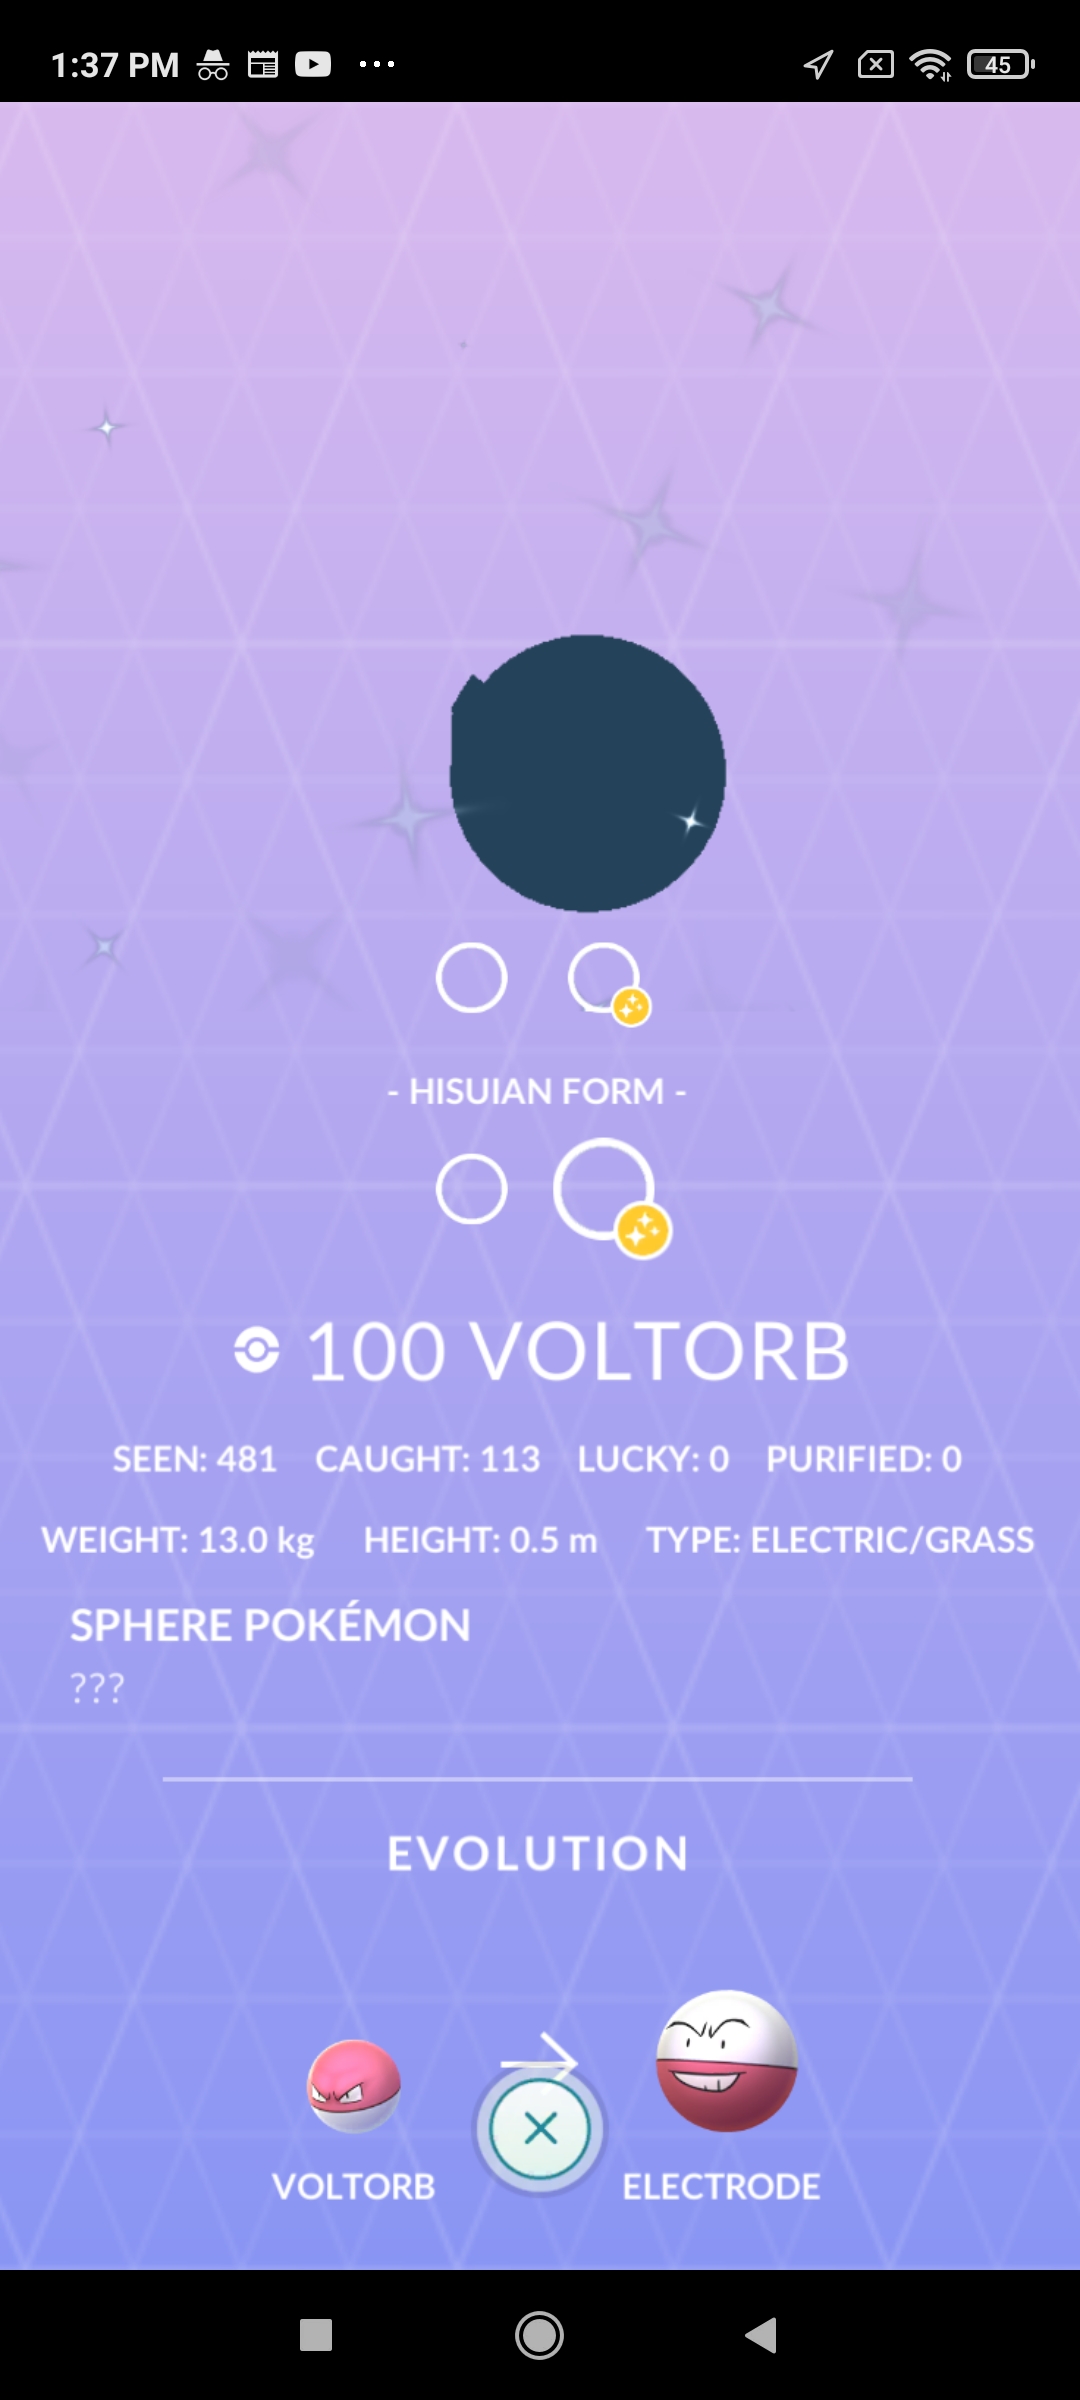 Evolving SHINY VOLTORB to SHINY ELECTRODE in Pokemon Go 